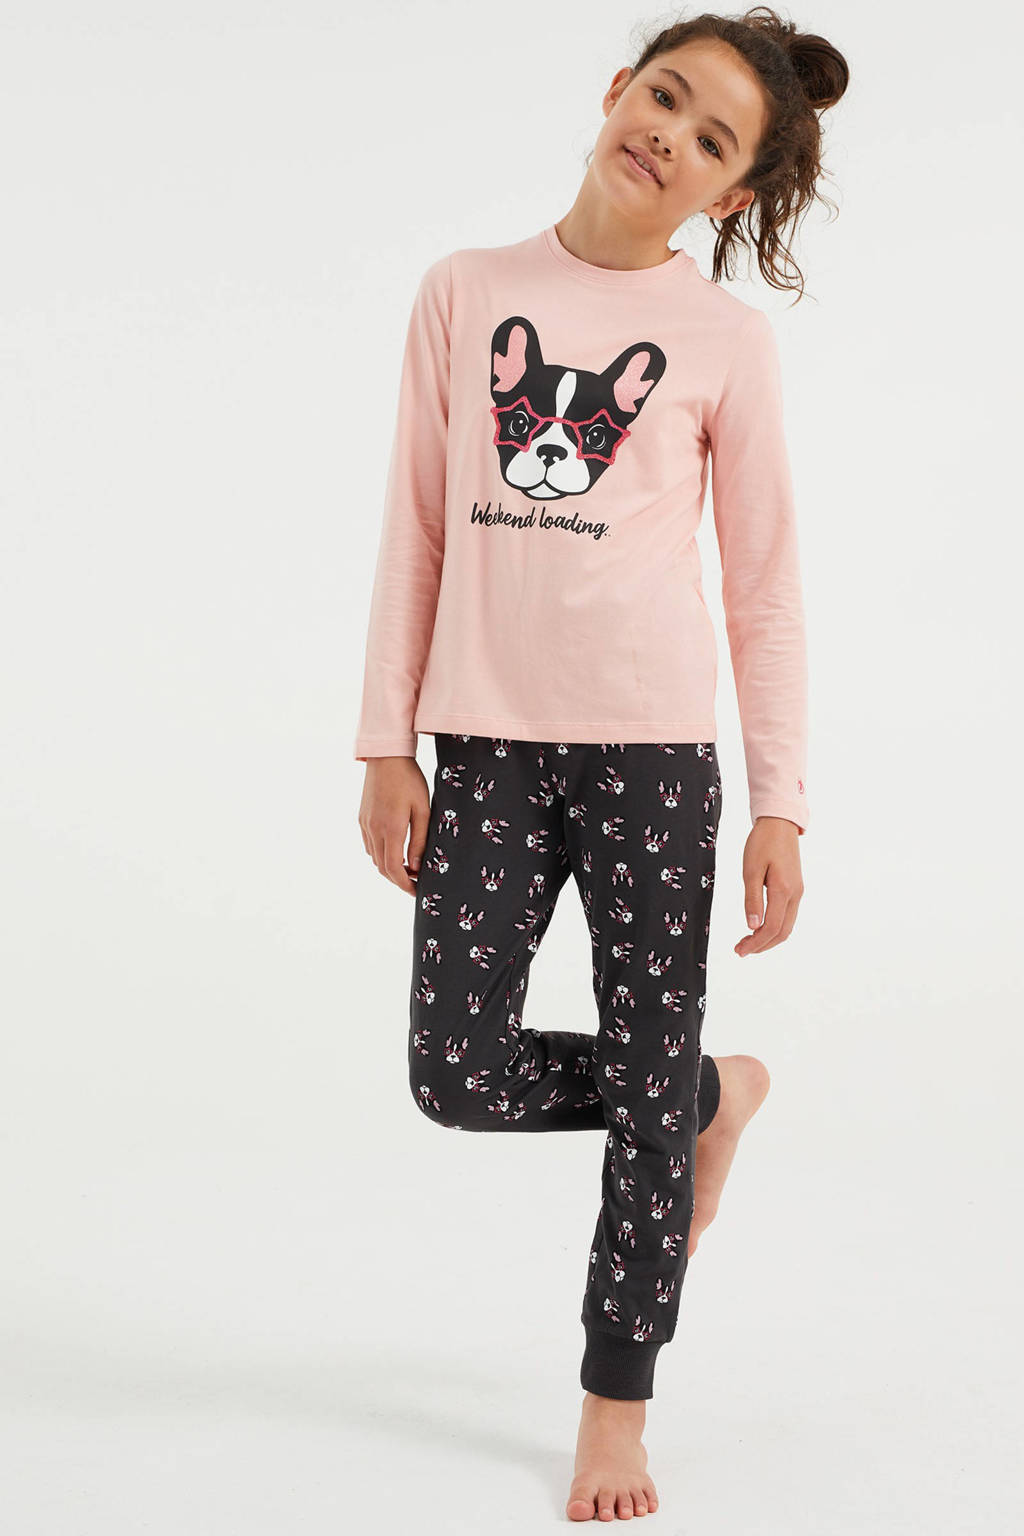 kijk in Aap Janice WE Fashion pyjama met printopdruk lichtroze/grijs | wehkamp